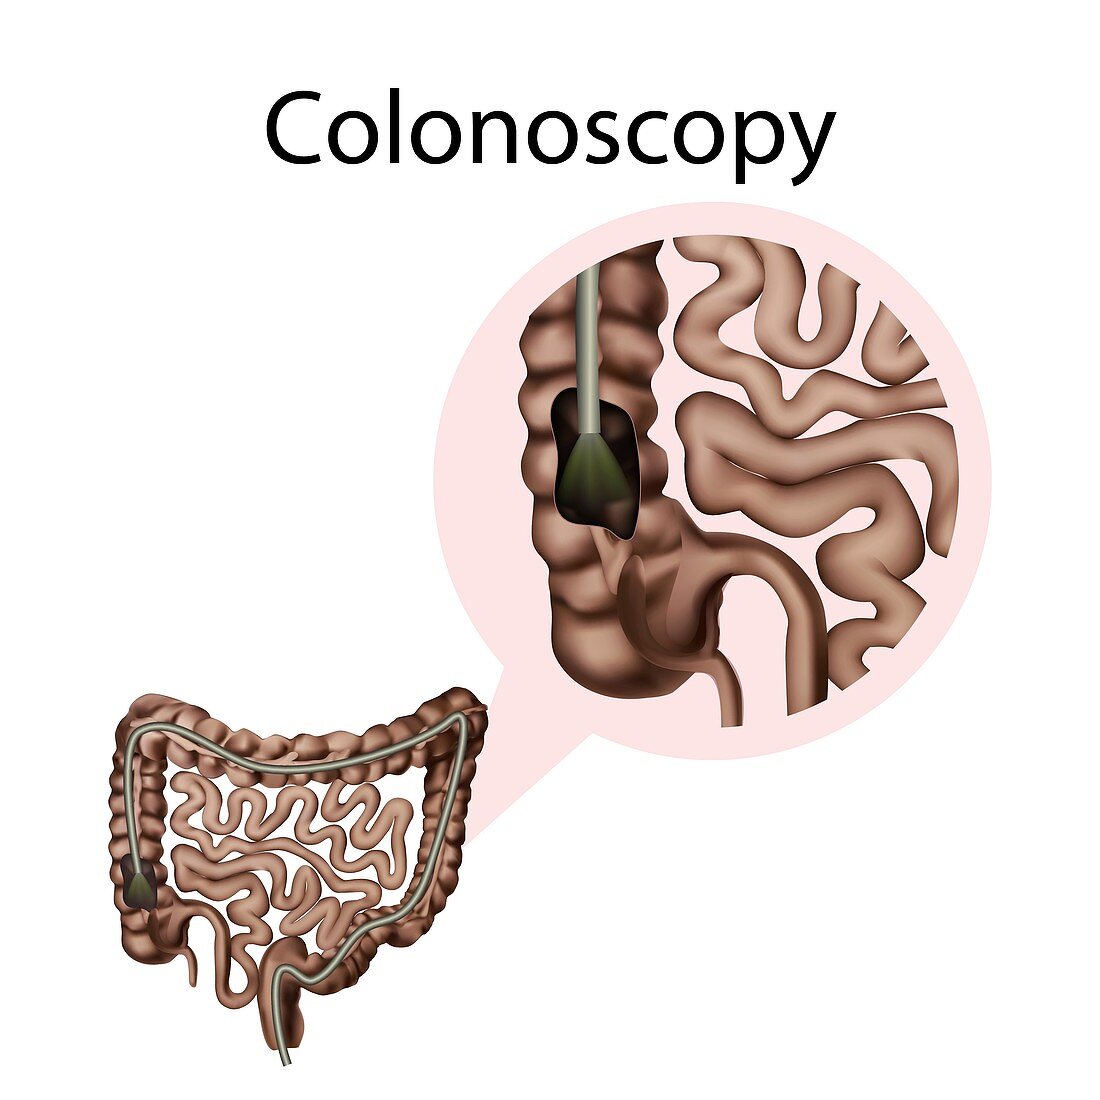 Colonoscopy, illustration